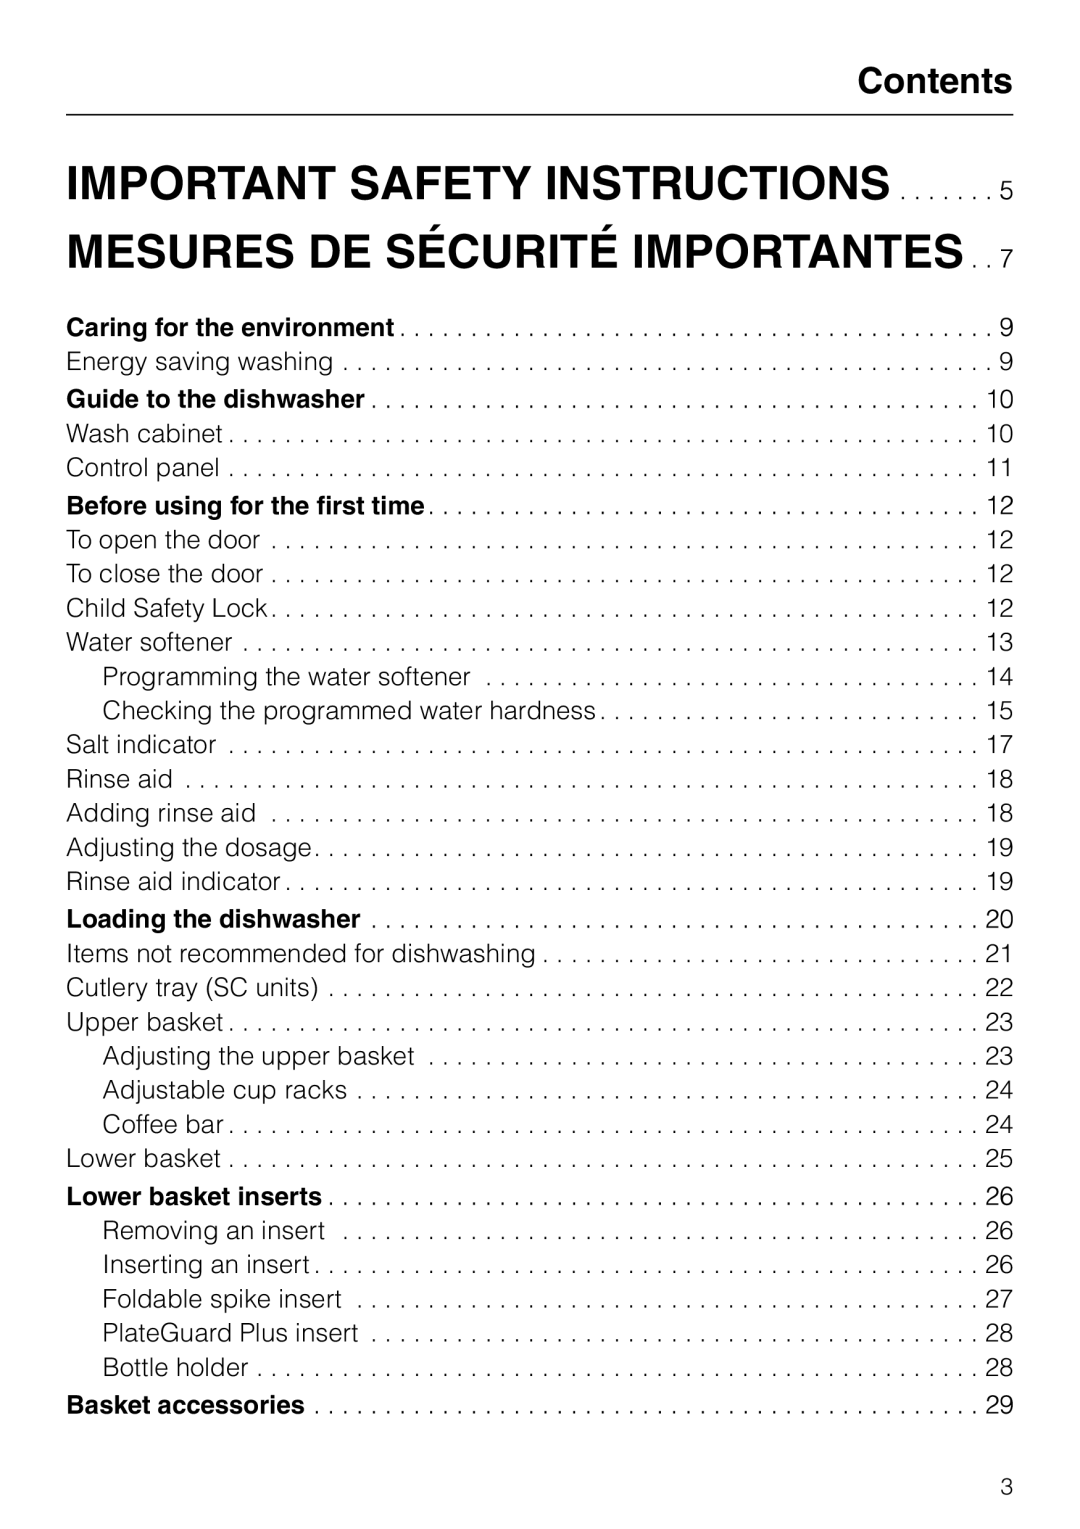 Miele G 856 SC ELITE manual Important Safety Instructions, Mesures De Sécurité Importantes, Contents 